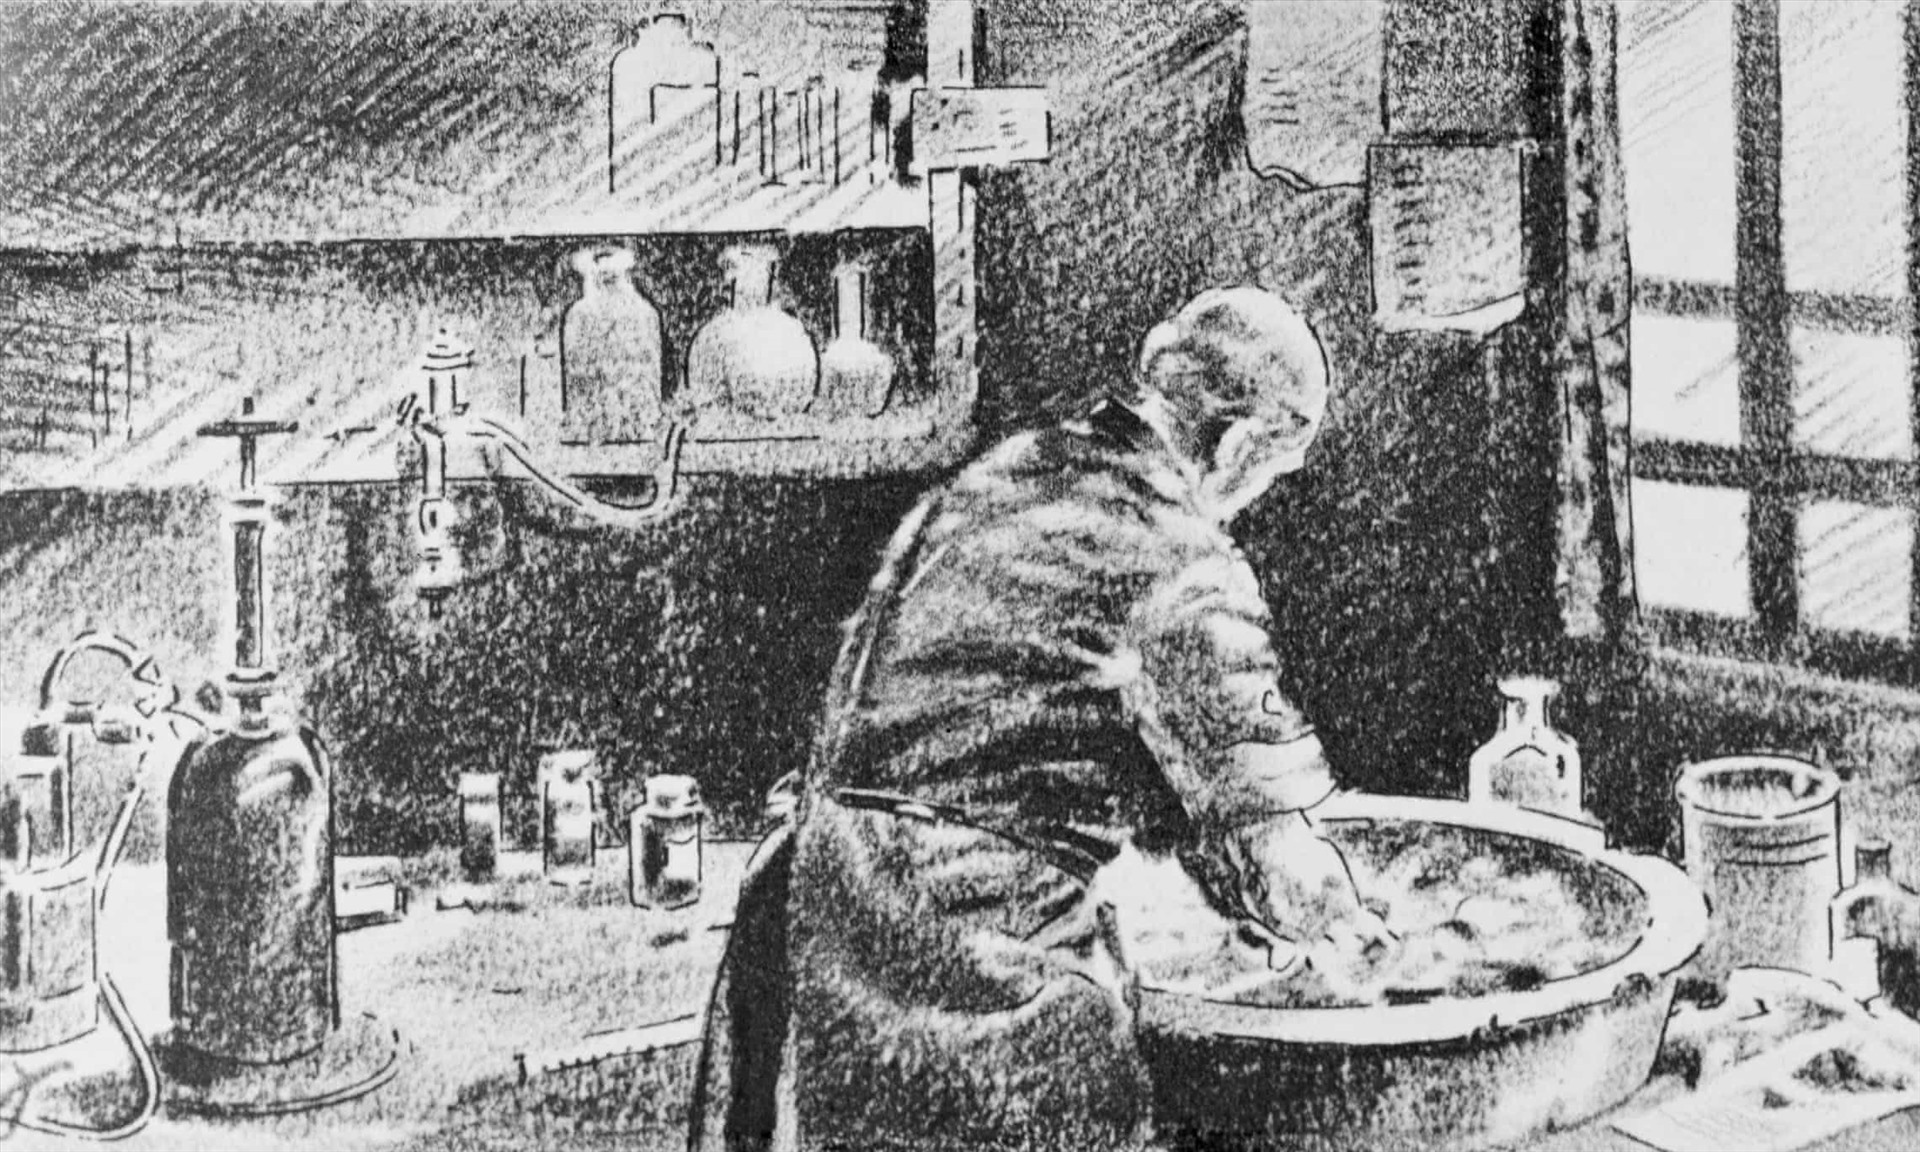 Bác sĩ Semmelweis là người đầu tiên có sáng kiến rửa tay phòng ngừa lây nhiễm. Ảnh: Bettmann Archive